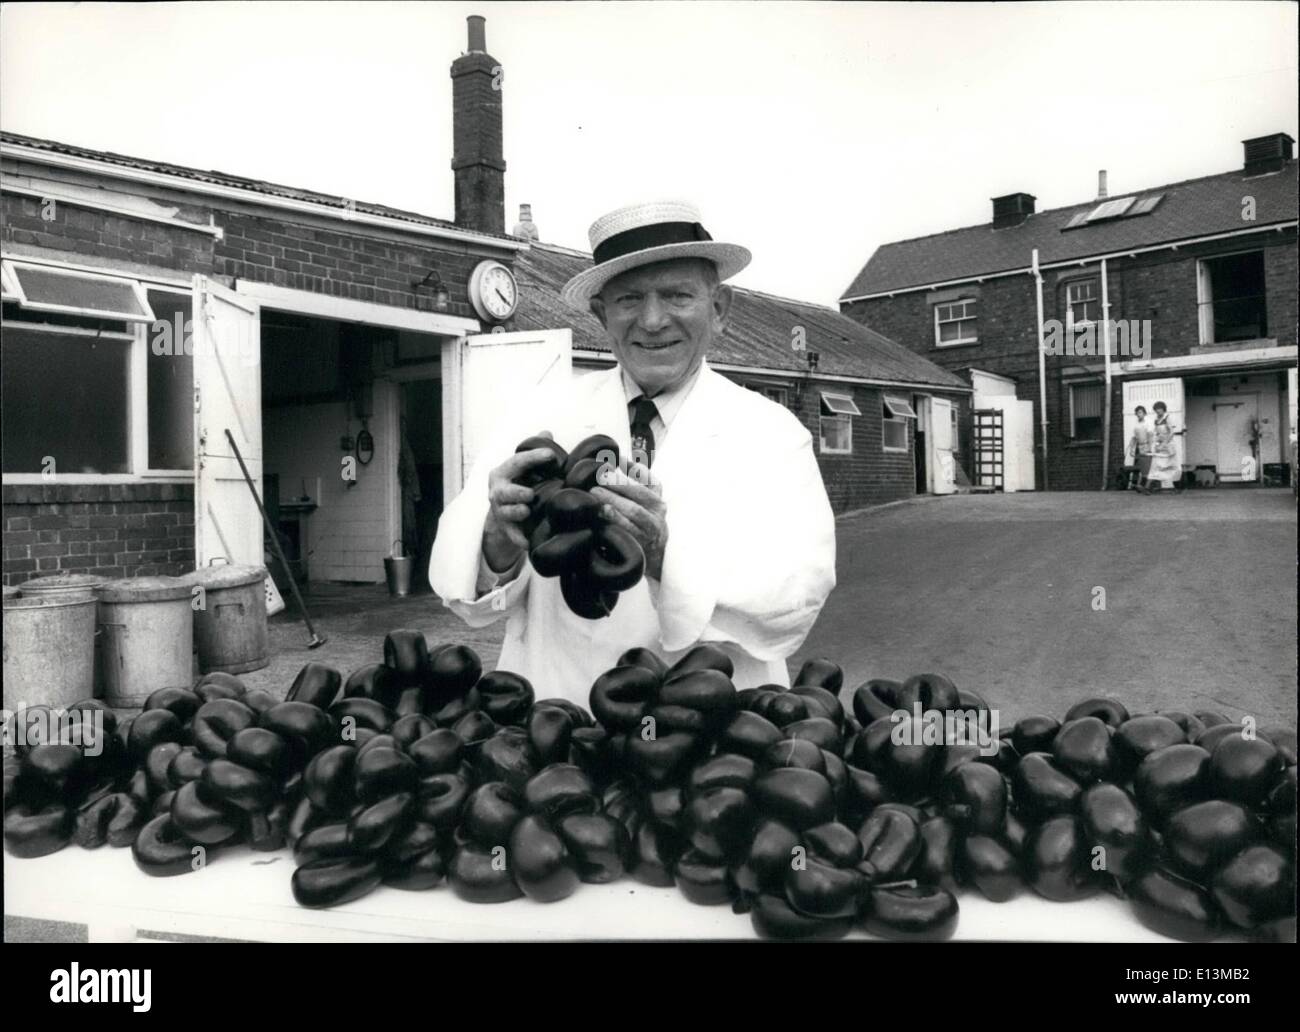 Mar 02, 2012 - Albert Hirst invecchiato 67 con quello che potrebbe essere il vincitore del premio budino nero presso il suo stabilimento in Strada della Regina, Barnsley, Yorkshire. Foto Stock